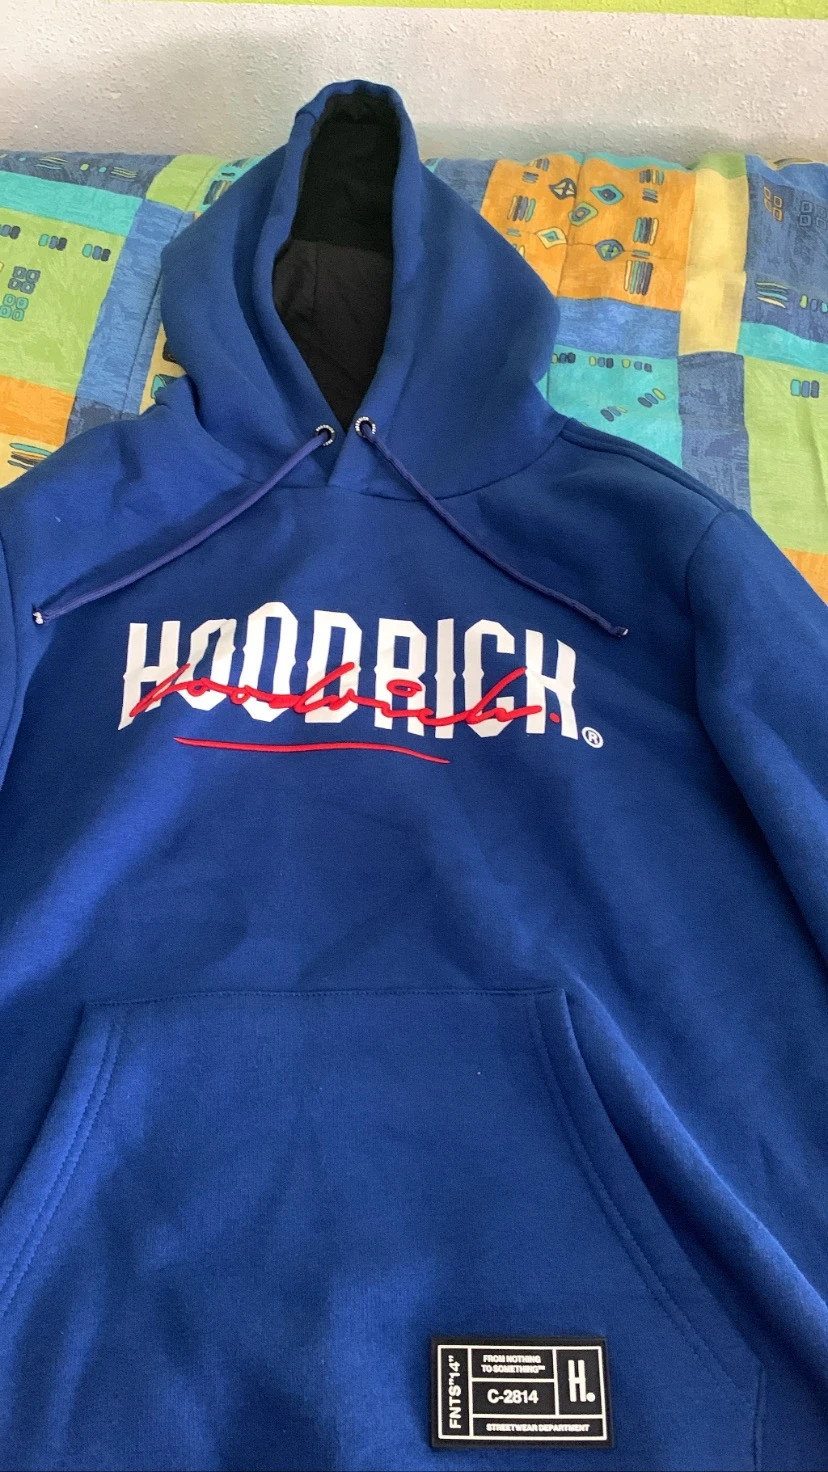 Hoodrich España-Hoodrich Sudadera y Hoodrich chaqueta para hombre y mujer